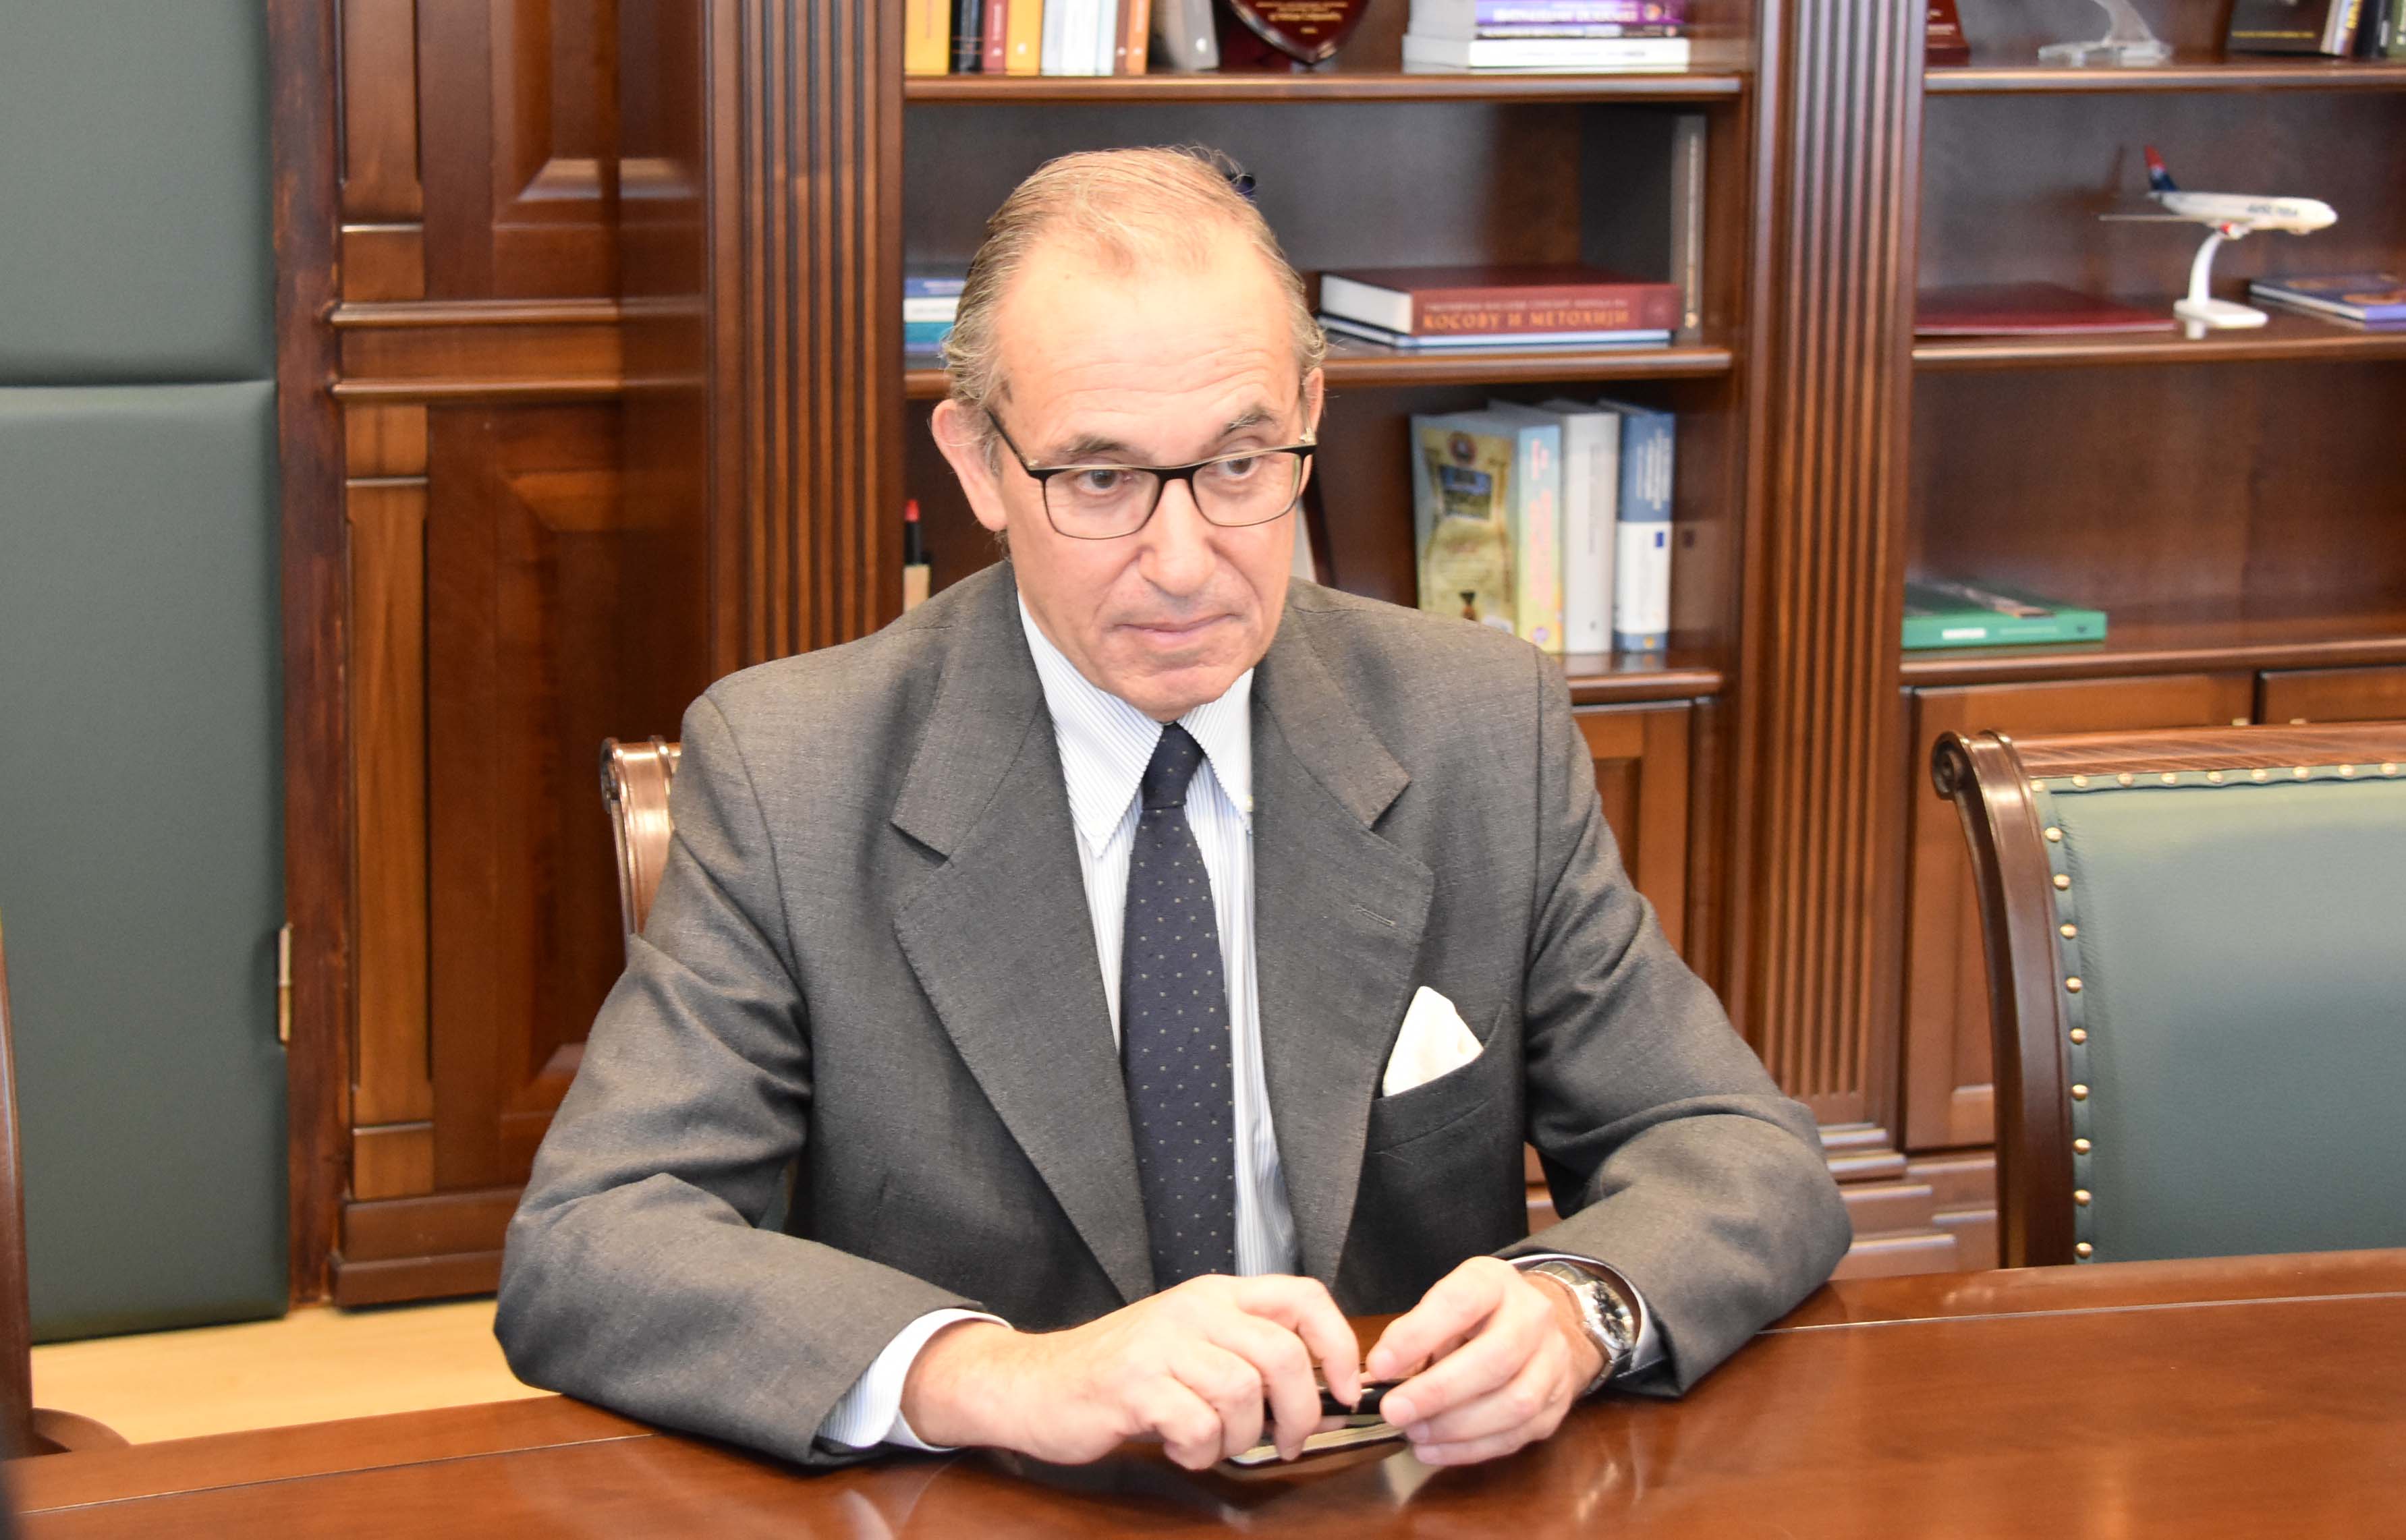 Mинистар Стефановић састао се са новоименованим амбасадором Републике Аргентине